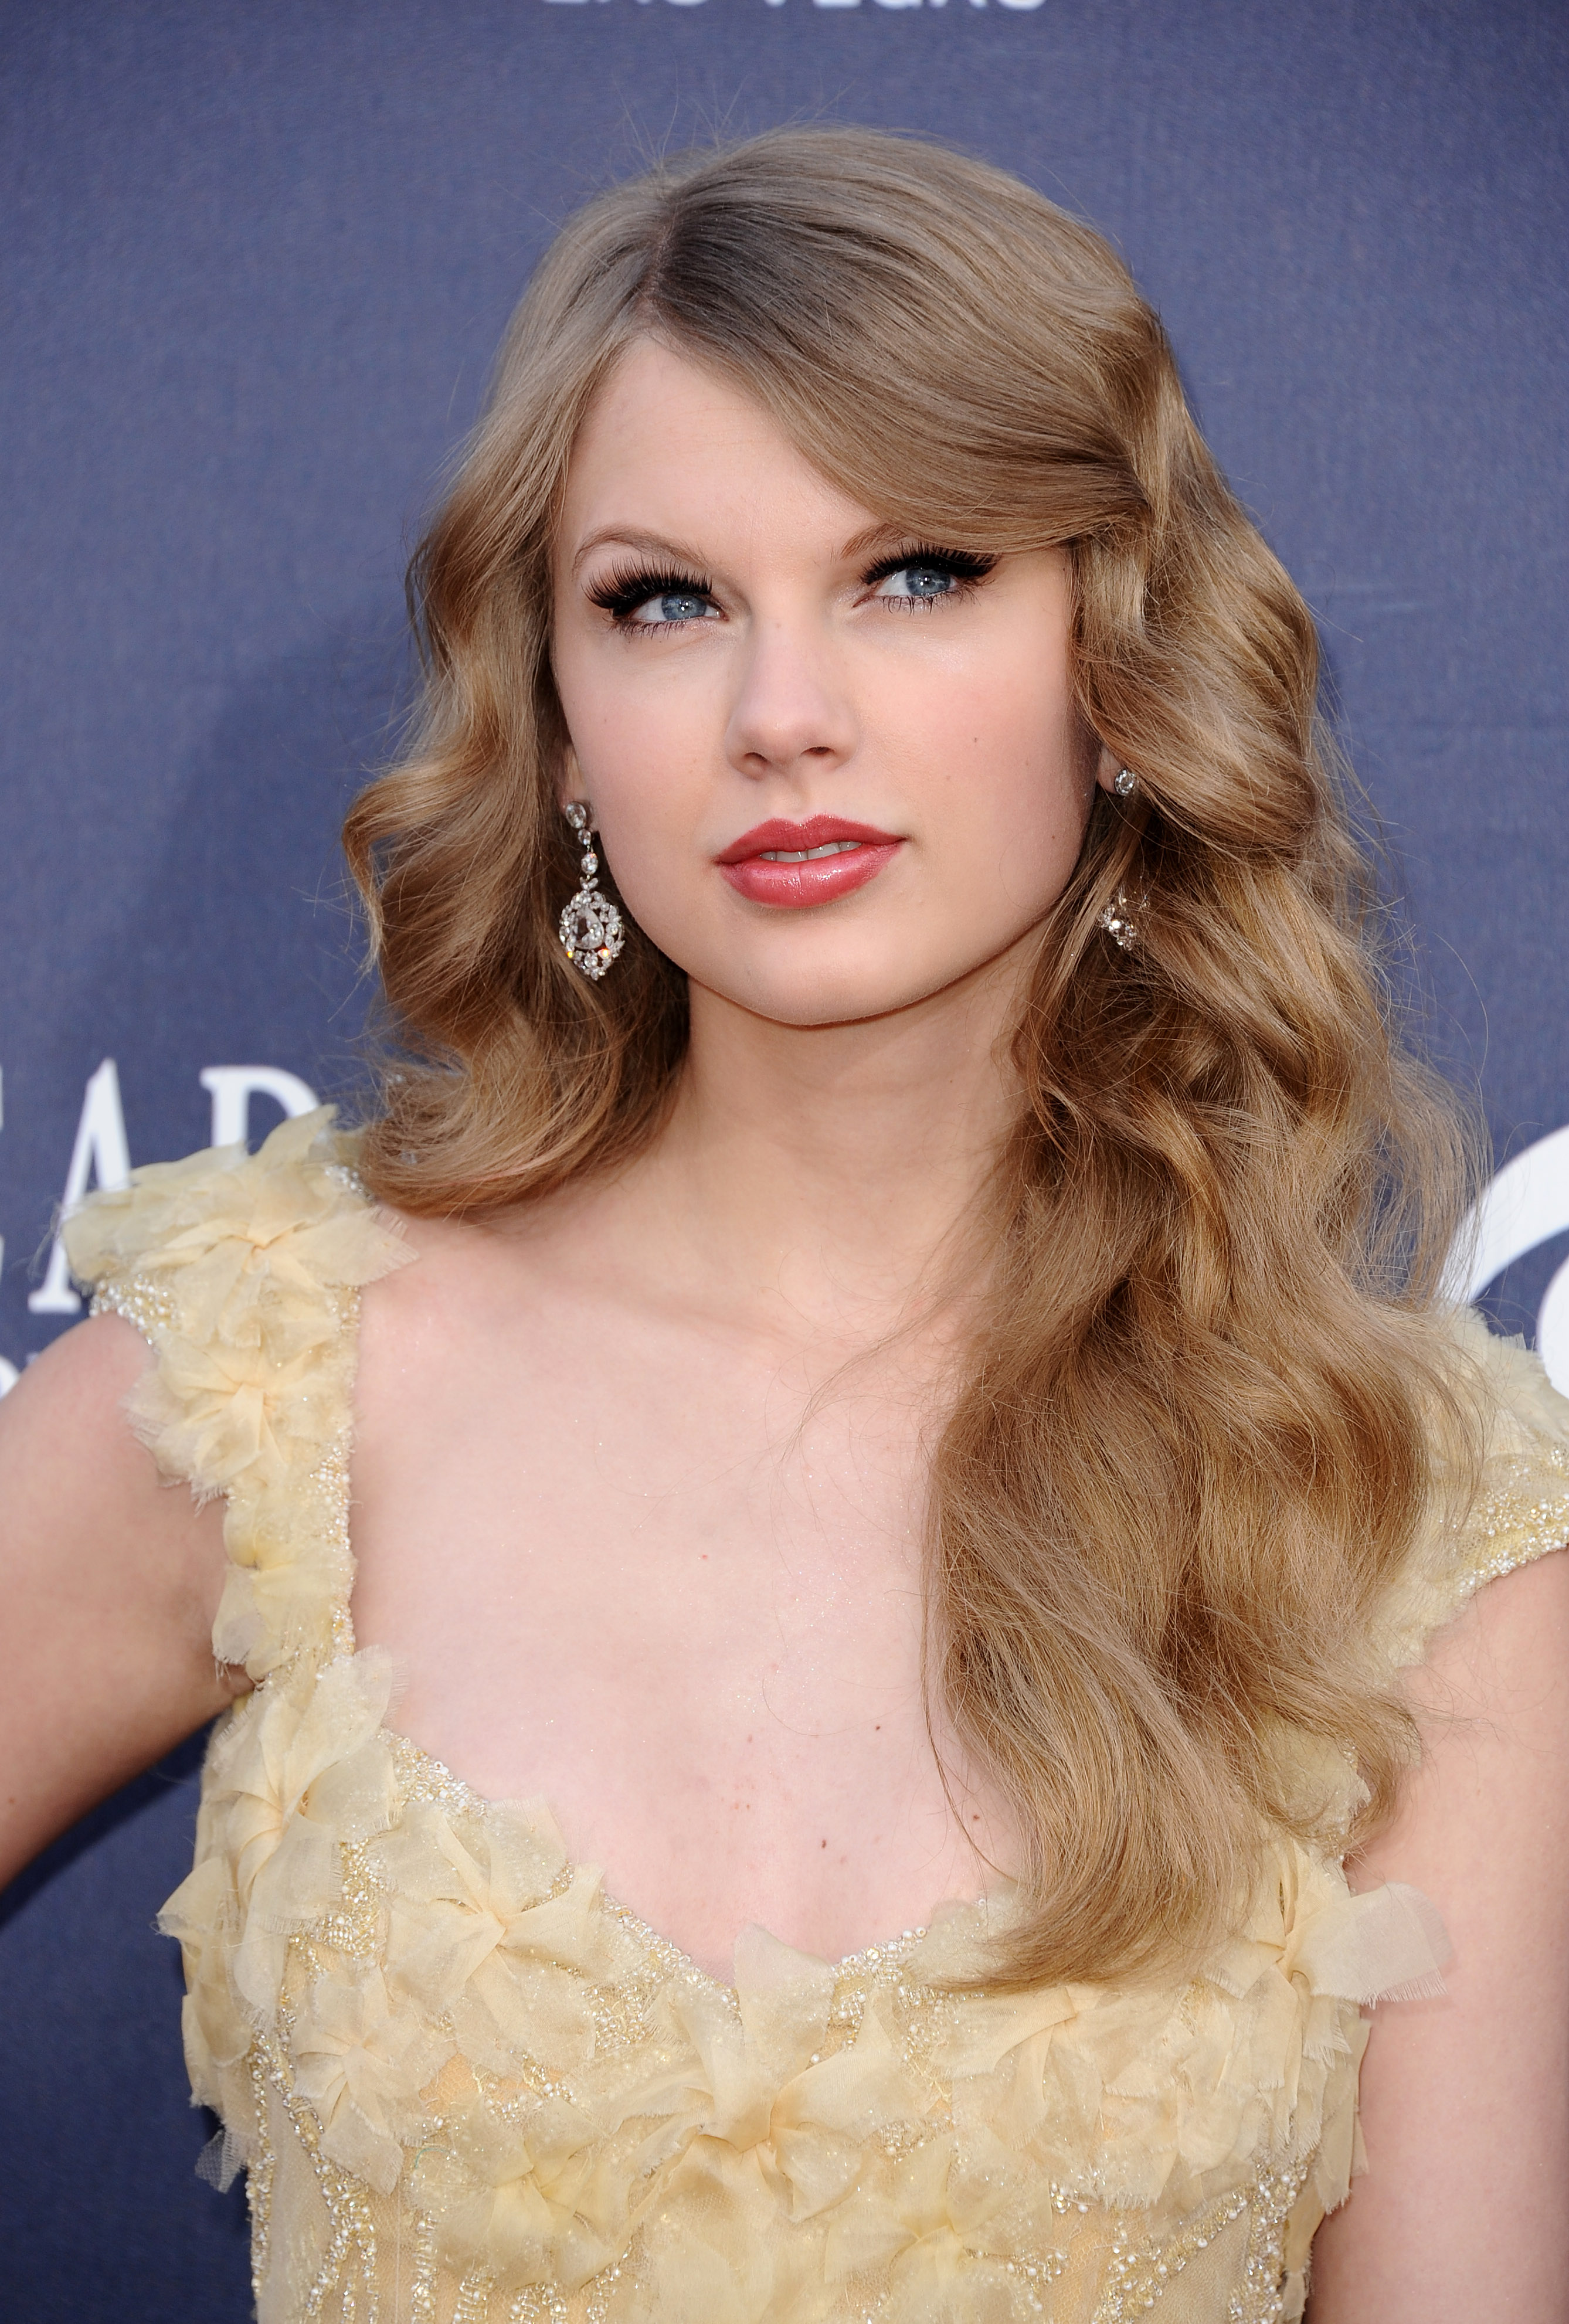 blondes, women, Taylor Swift, celebrity, singers - desktop wallpaper